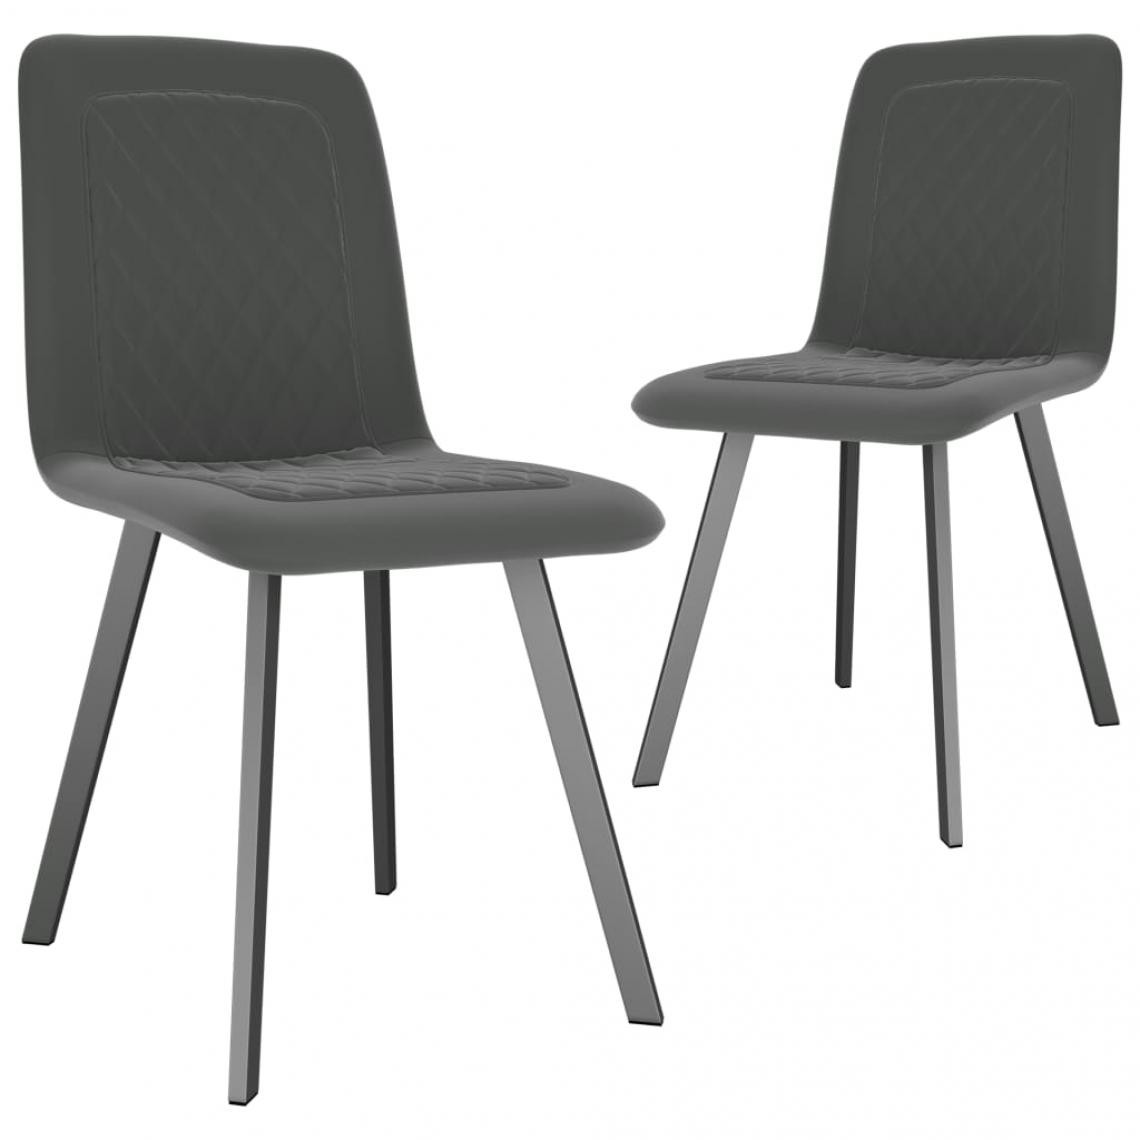 Decoshop26 - Lot de 2 chaises de salle à manger cuisine design moderne velours gris CDS020613 - Chaises